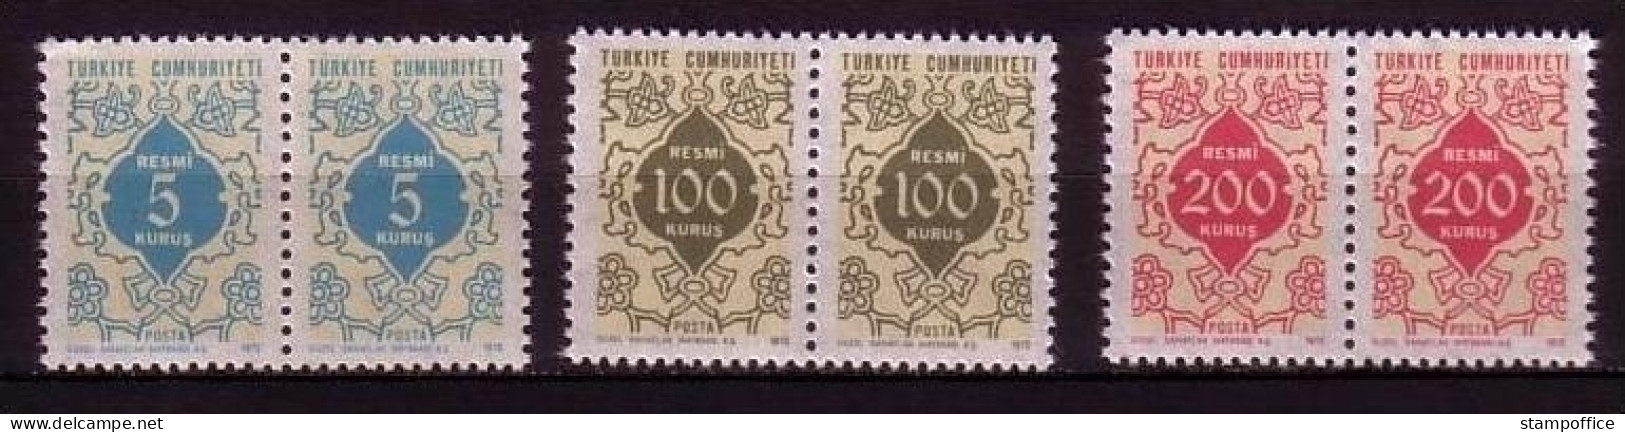 TÜRKEI DIENSTMARKEN MI-NR. 130-132 POSTFRISCH(MINT) Pärchen ORNAMENTE - Official Stamps